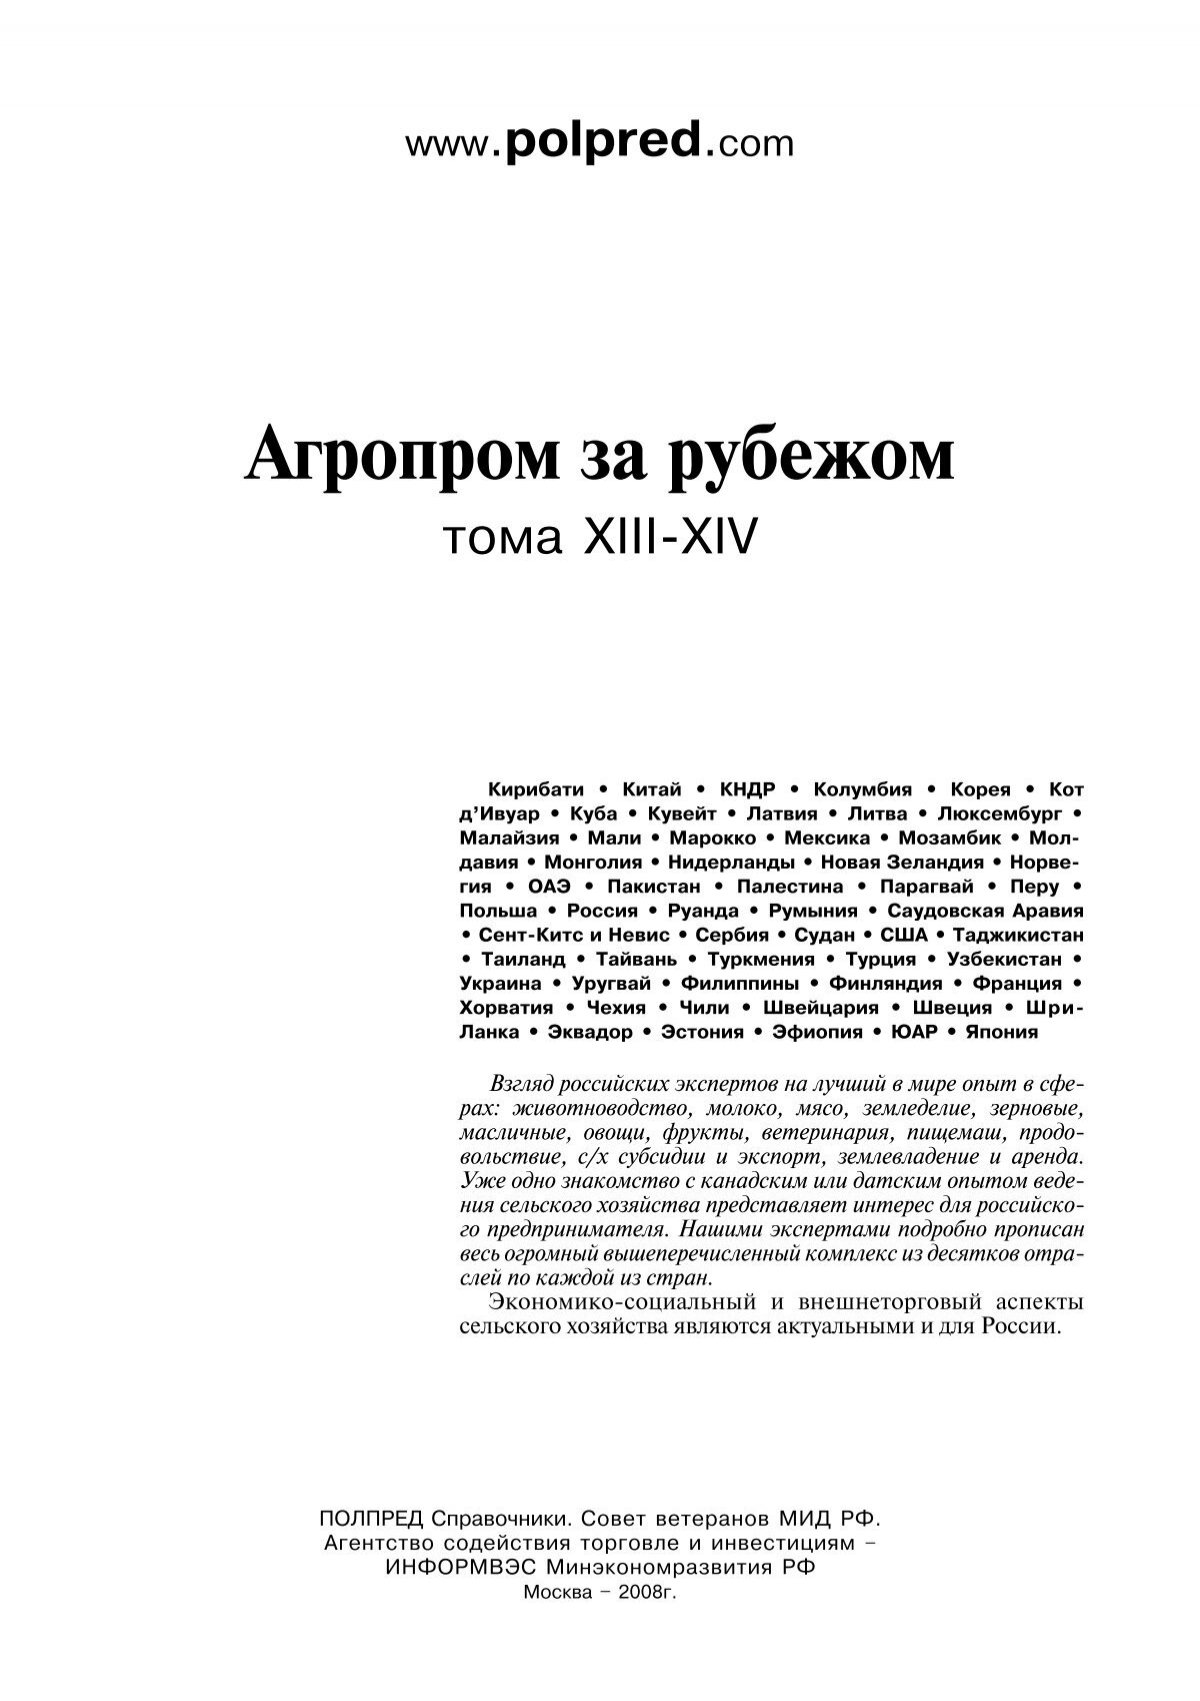 Контрольная работа по теме Реконструкция и развитие сельского хозяйства Приднестровья в 20-30-е годы